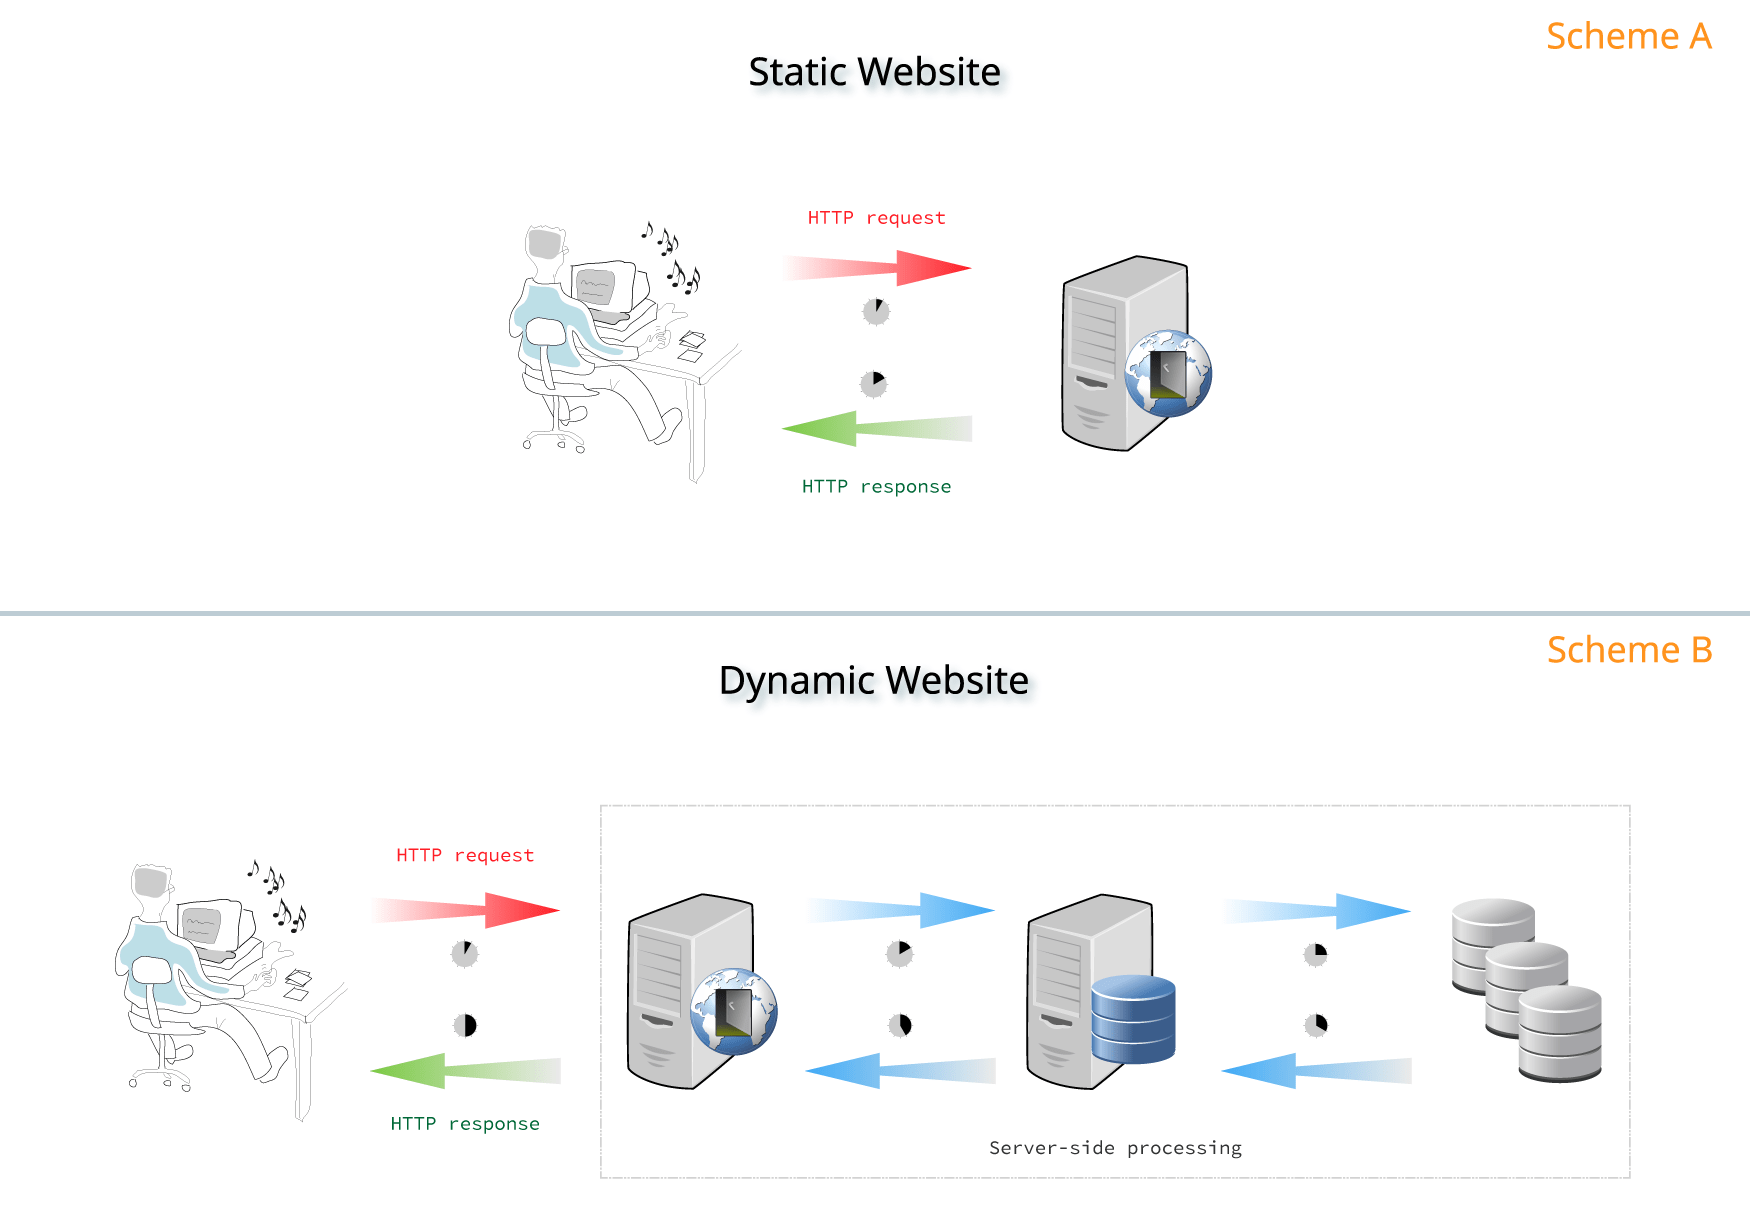 Static vs Dynamic server processing